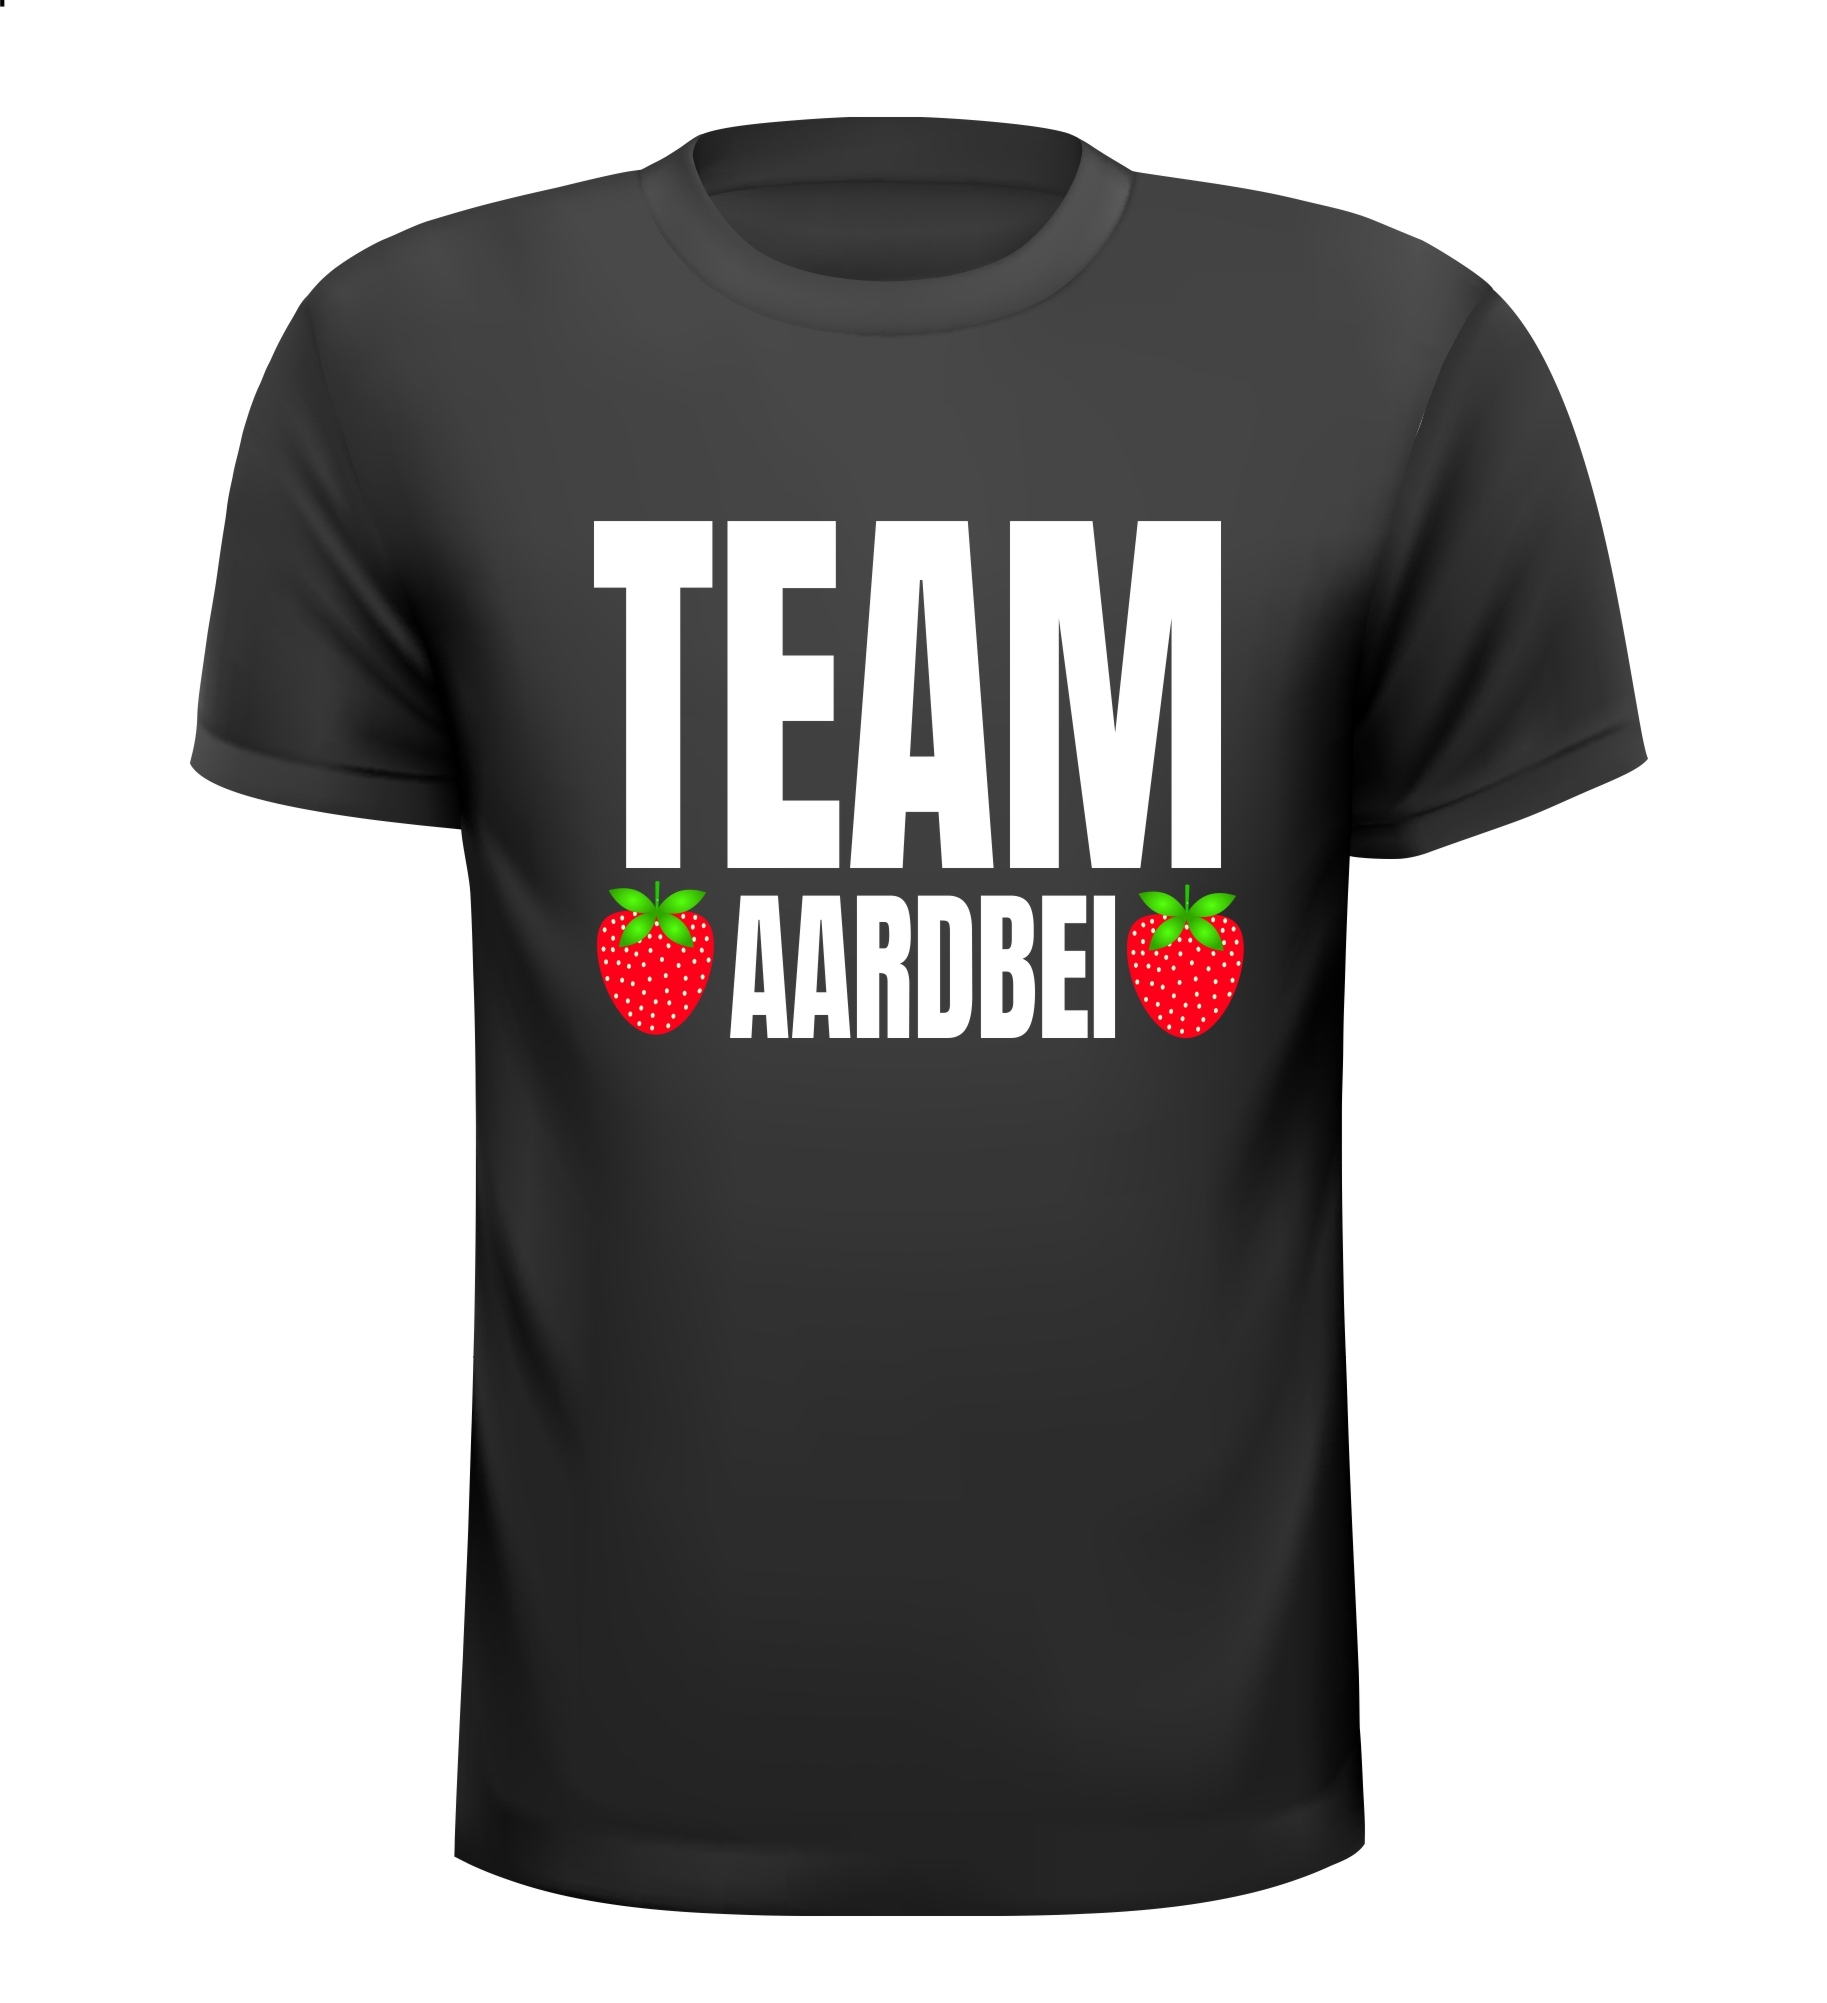 Shirtje voor Team aardbei. Het aardbeien team.